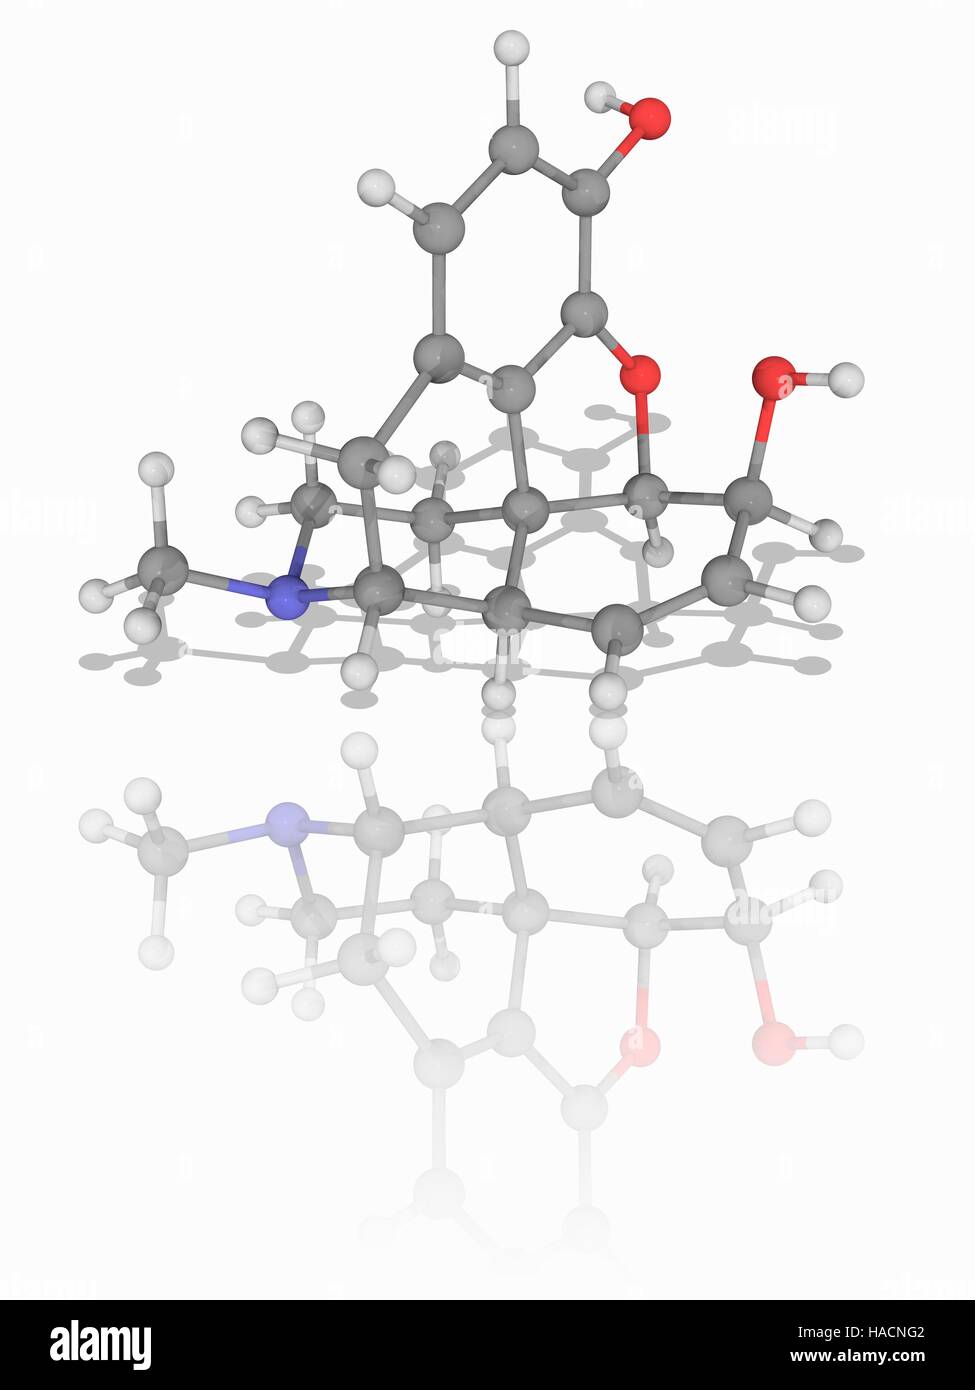 Morphin. Molekülmodell von Morphin (C17. H19. N.O3), ein Opiat Analgetikum verwendet, um Schmerzen und Leiden zu lindern. Atome als Kugeln dargestellt werden und sind farblich gekennzeichnet: Kohlenstoff (grau), Wasserstoff (weiß), Stickstoff (blau) und Sauerstoff (rot). Abbildung. Stockfoto